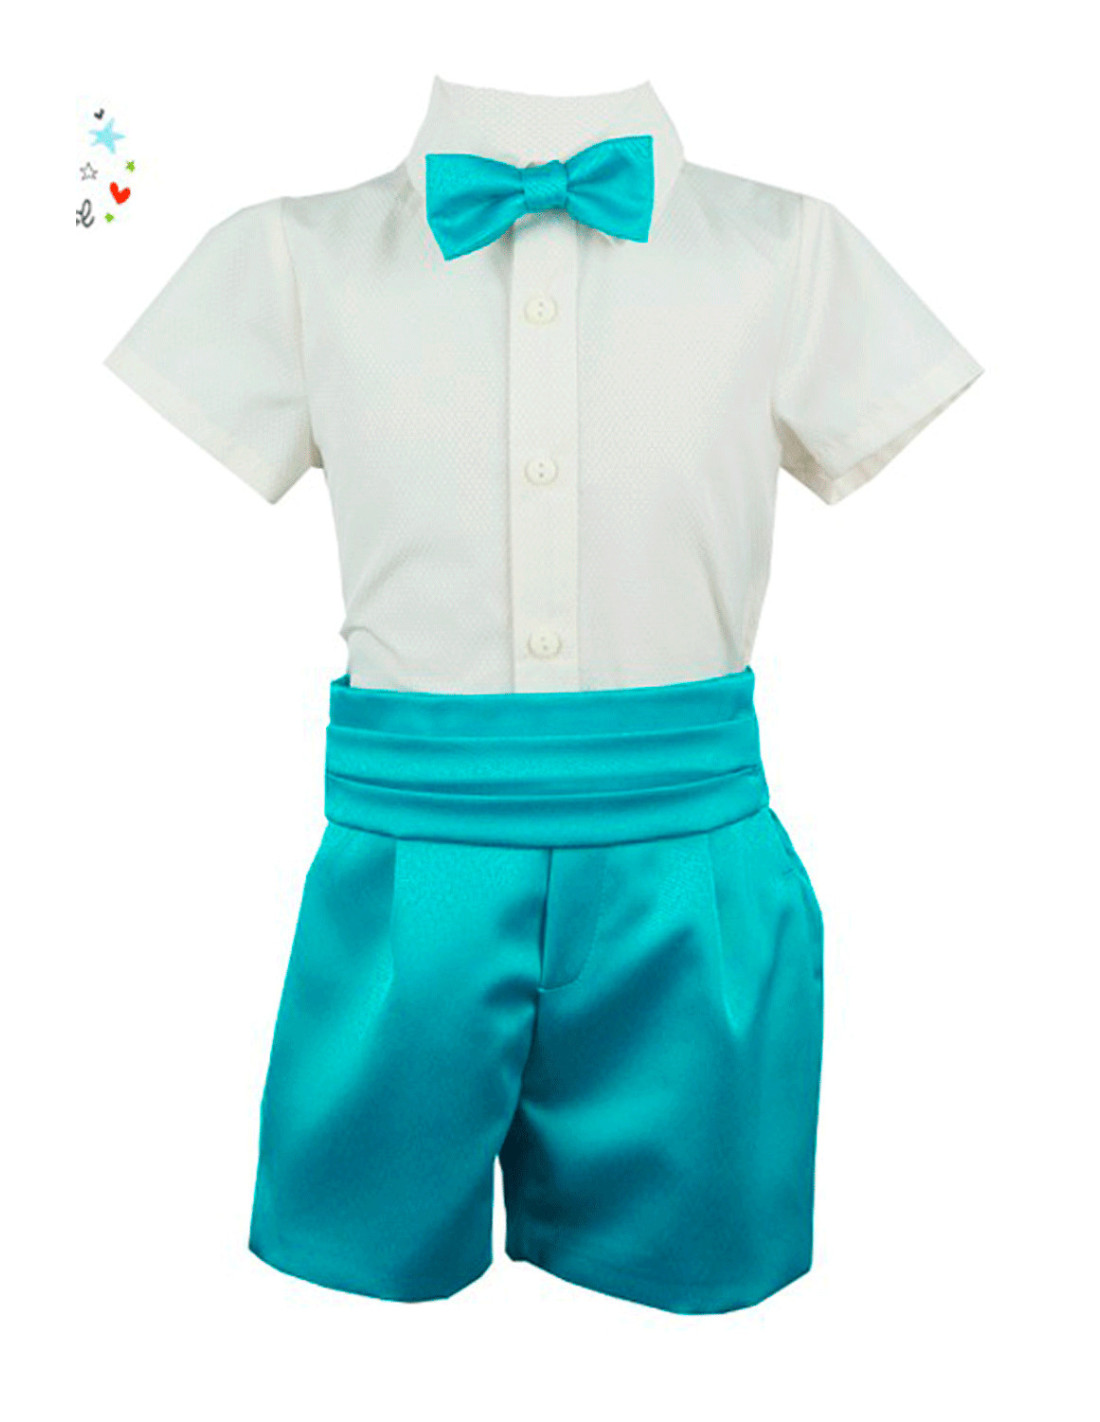 Ropa de niño |Conjunto de vestir niño bermuda azul cielo para niño ...  Color Azul Talla 2 Años